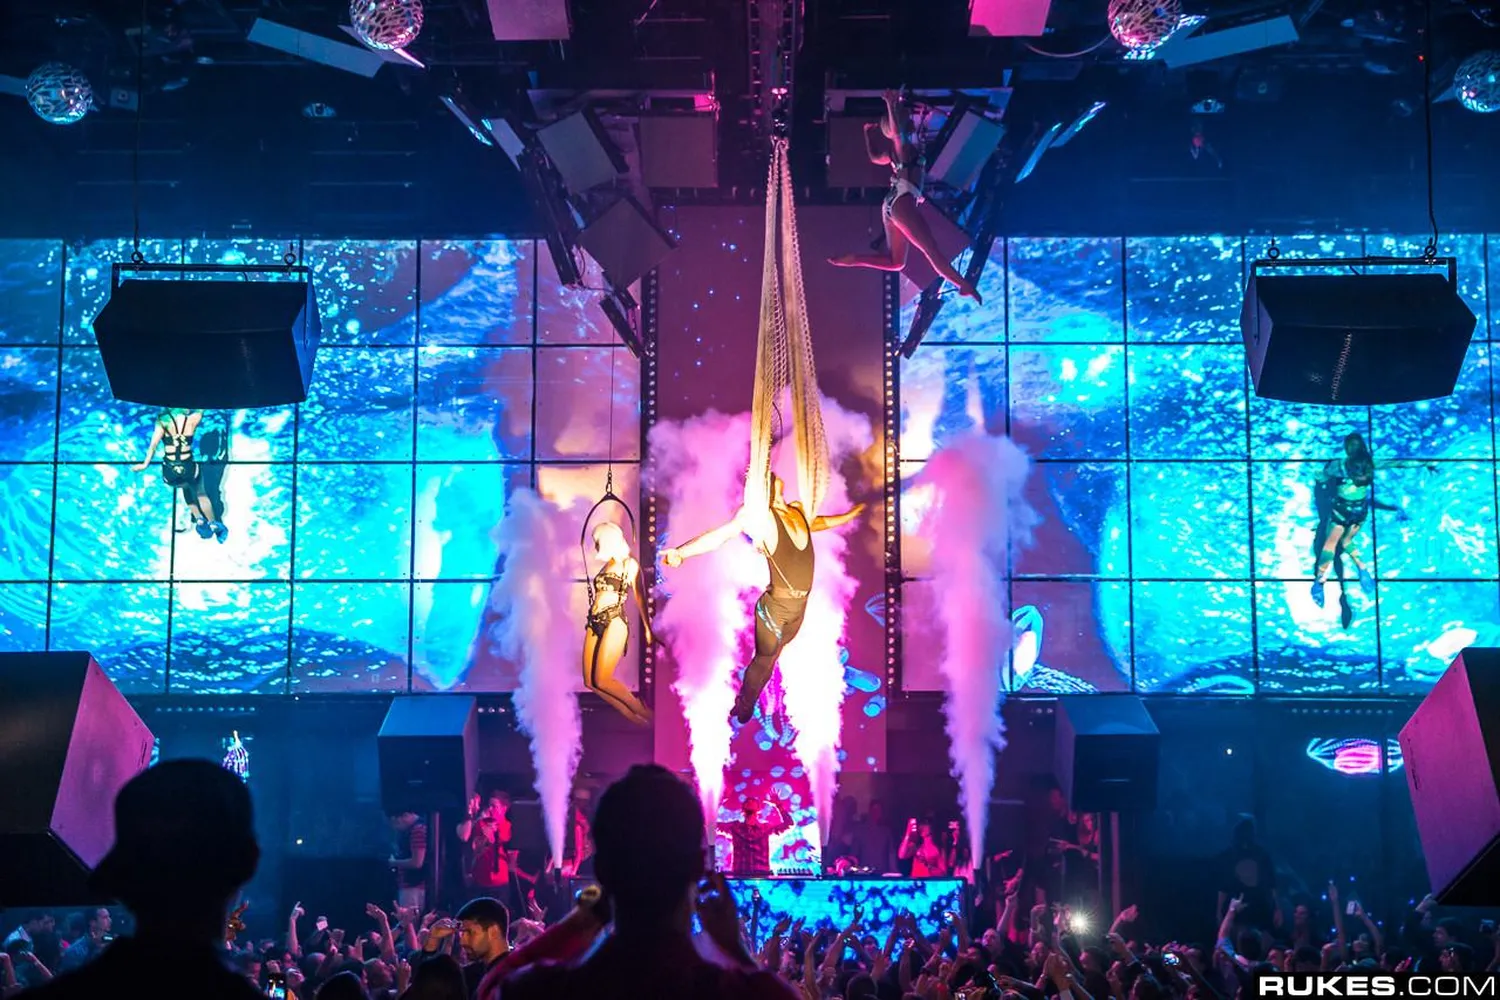 The Light nightclub Las Vegas